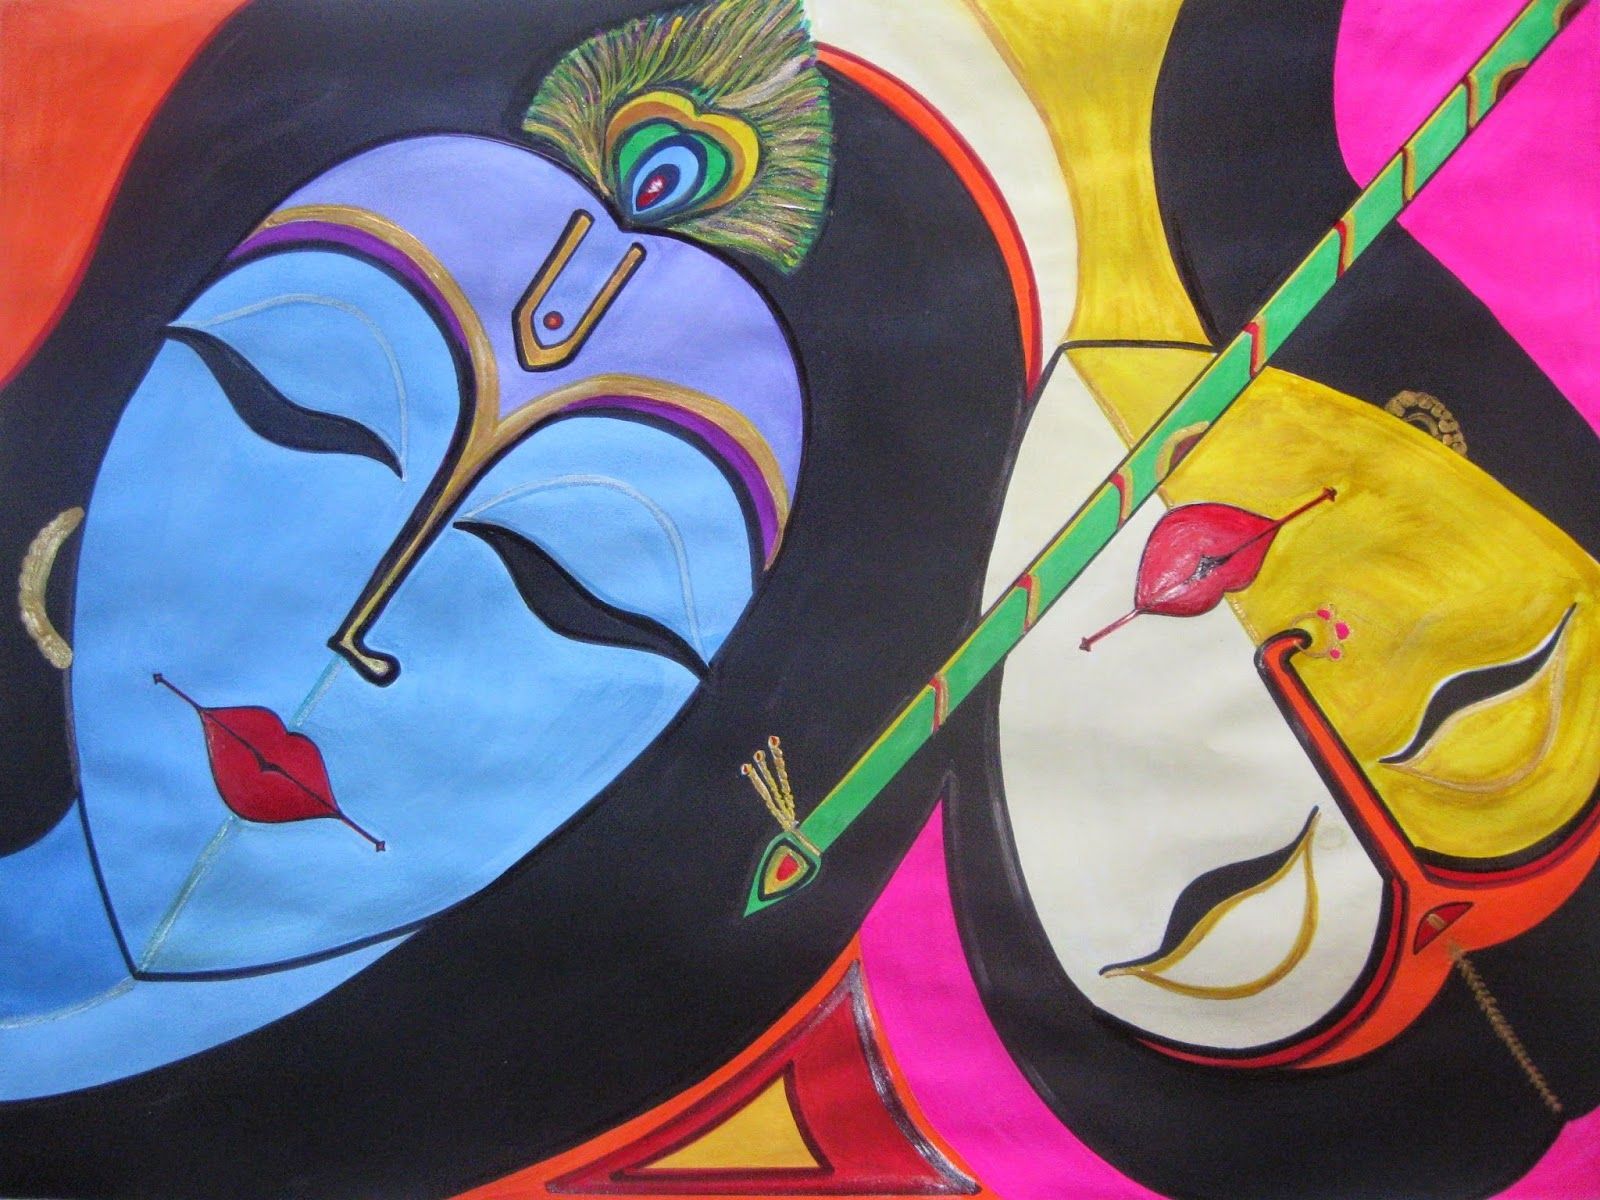 HD WALLPAPERS: Lord Radha Krishna Art Wallpaper